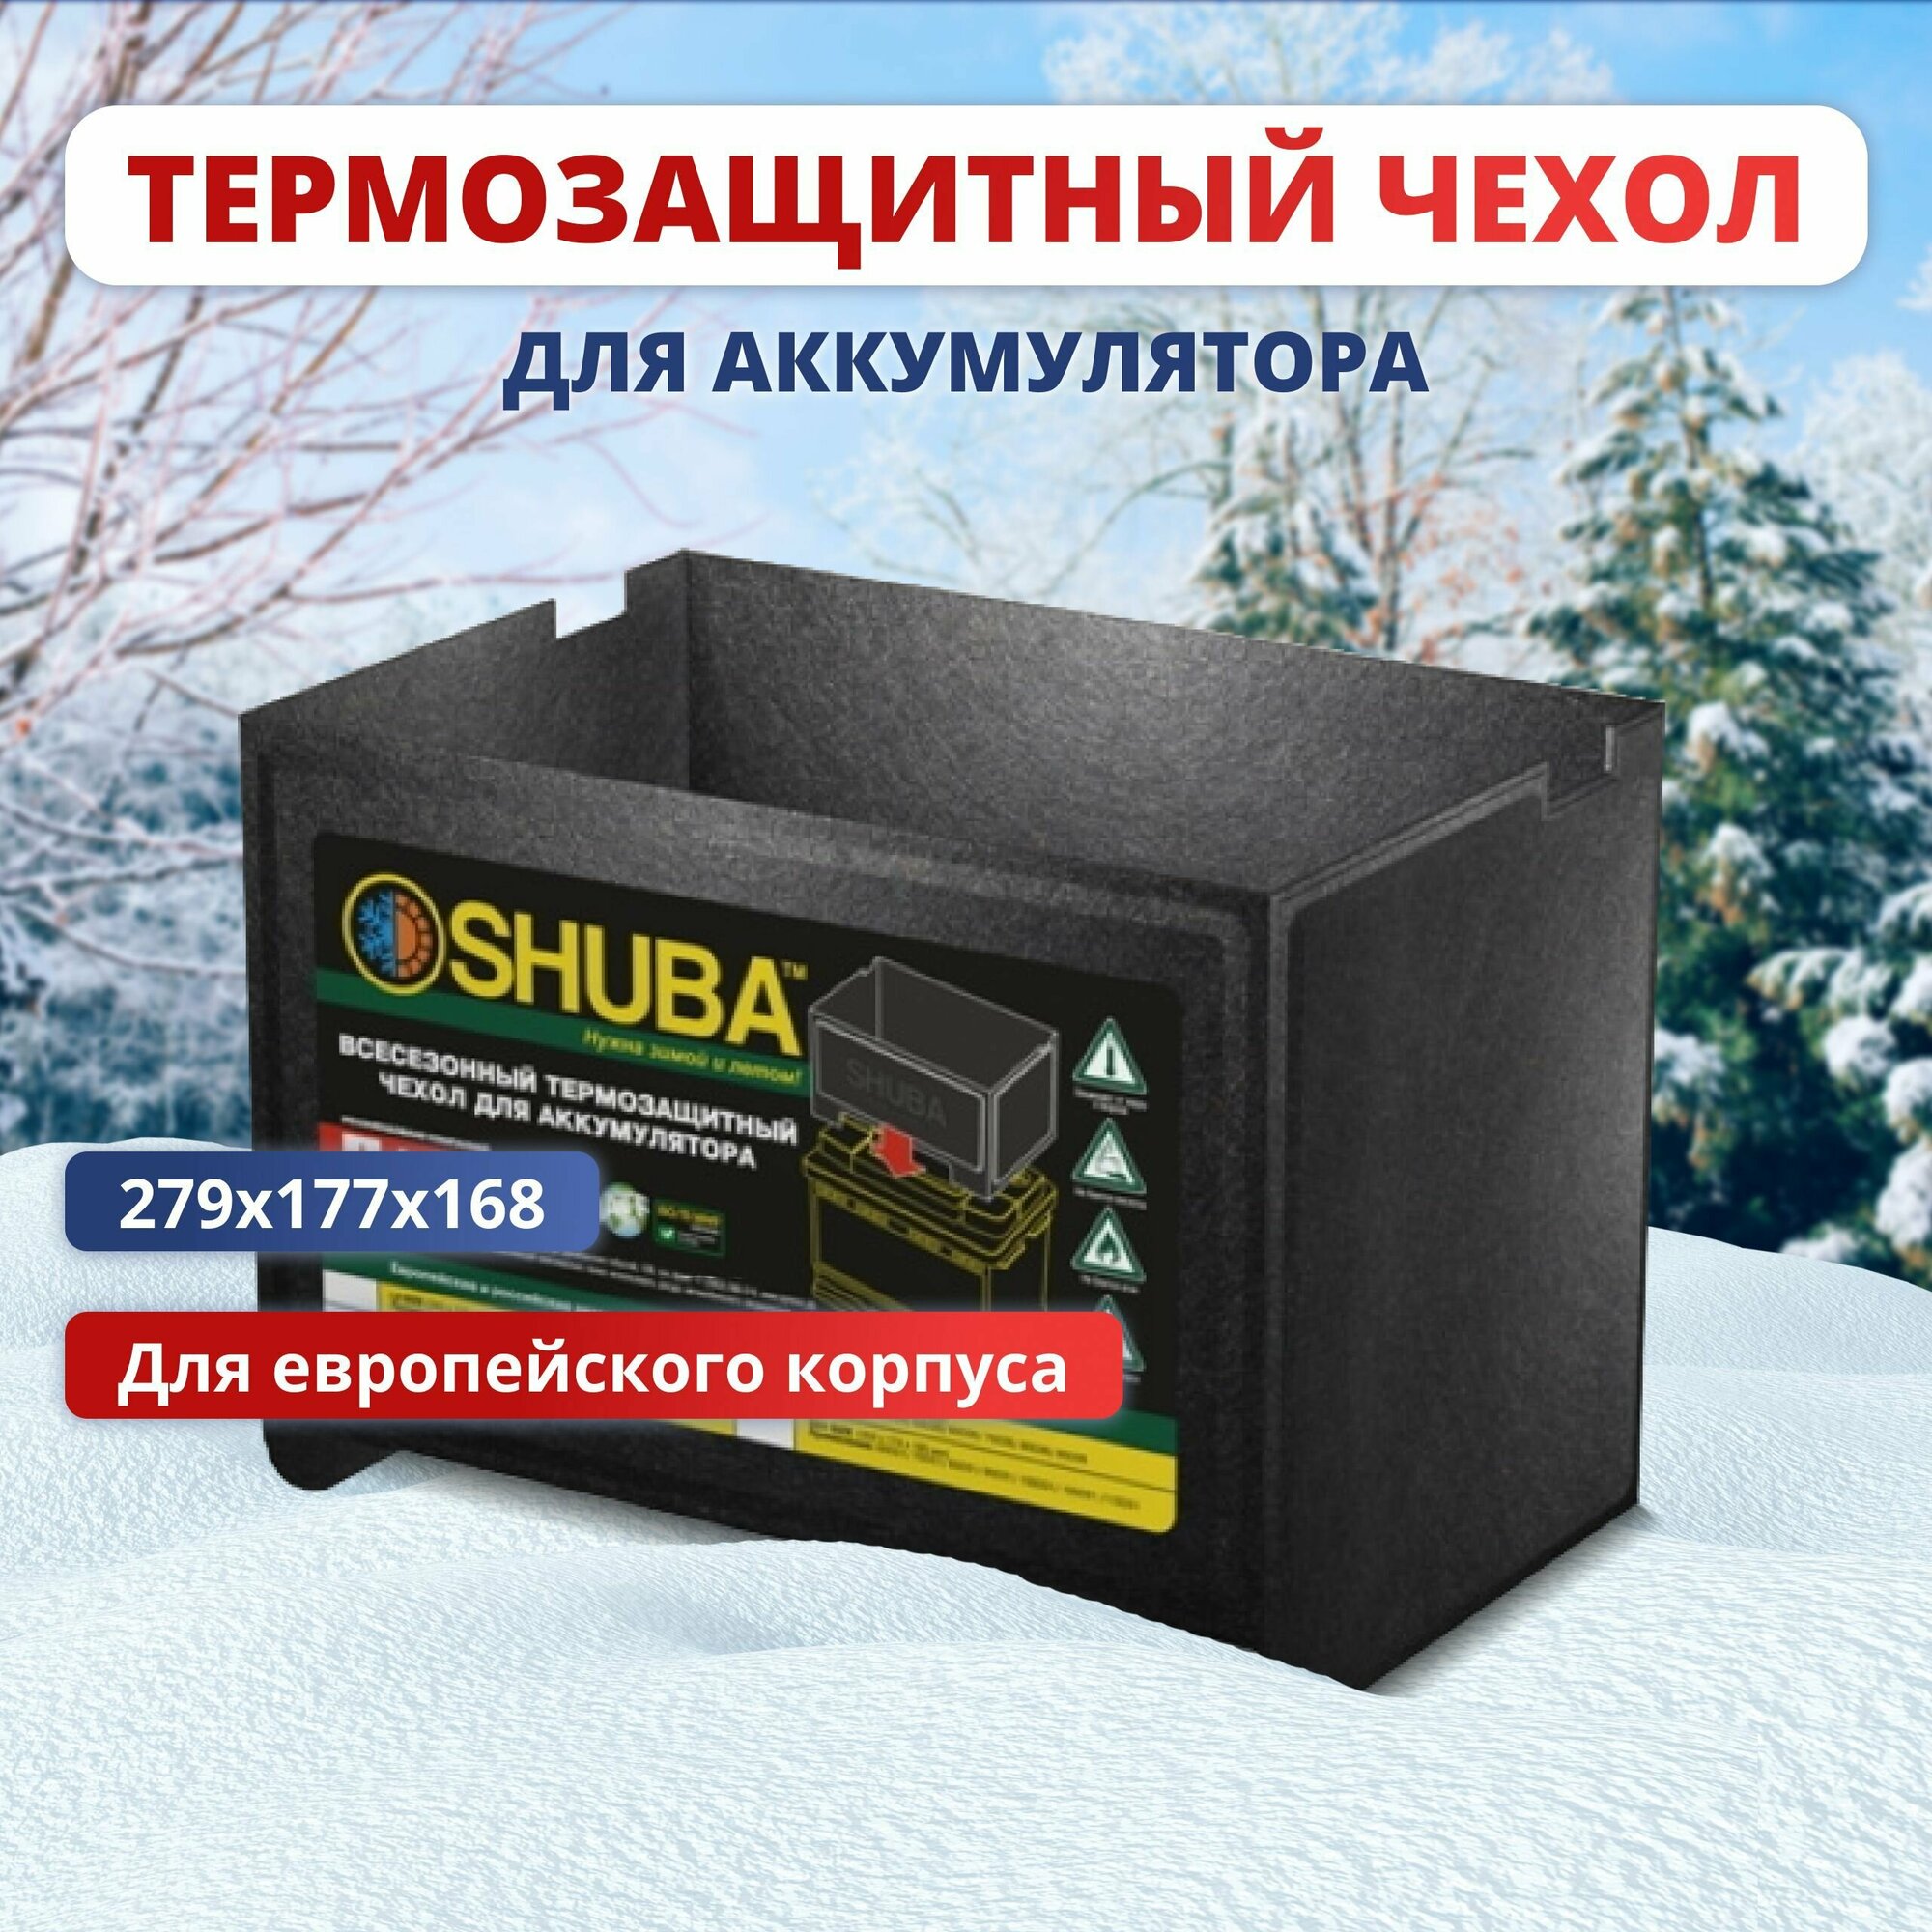 Всесезонный термозащитный чехол для аккумулятора автомобиля SHUBA L3 термокейс утеплитель чехол на акб авто 279x177x168